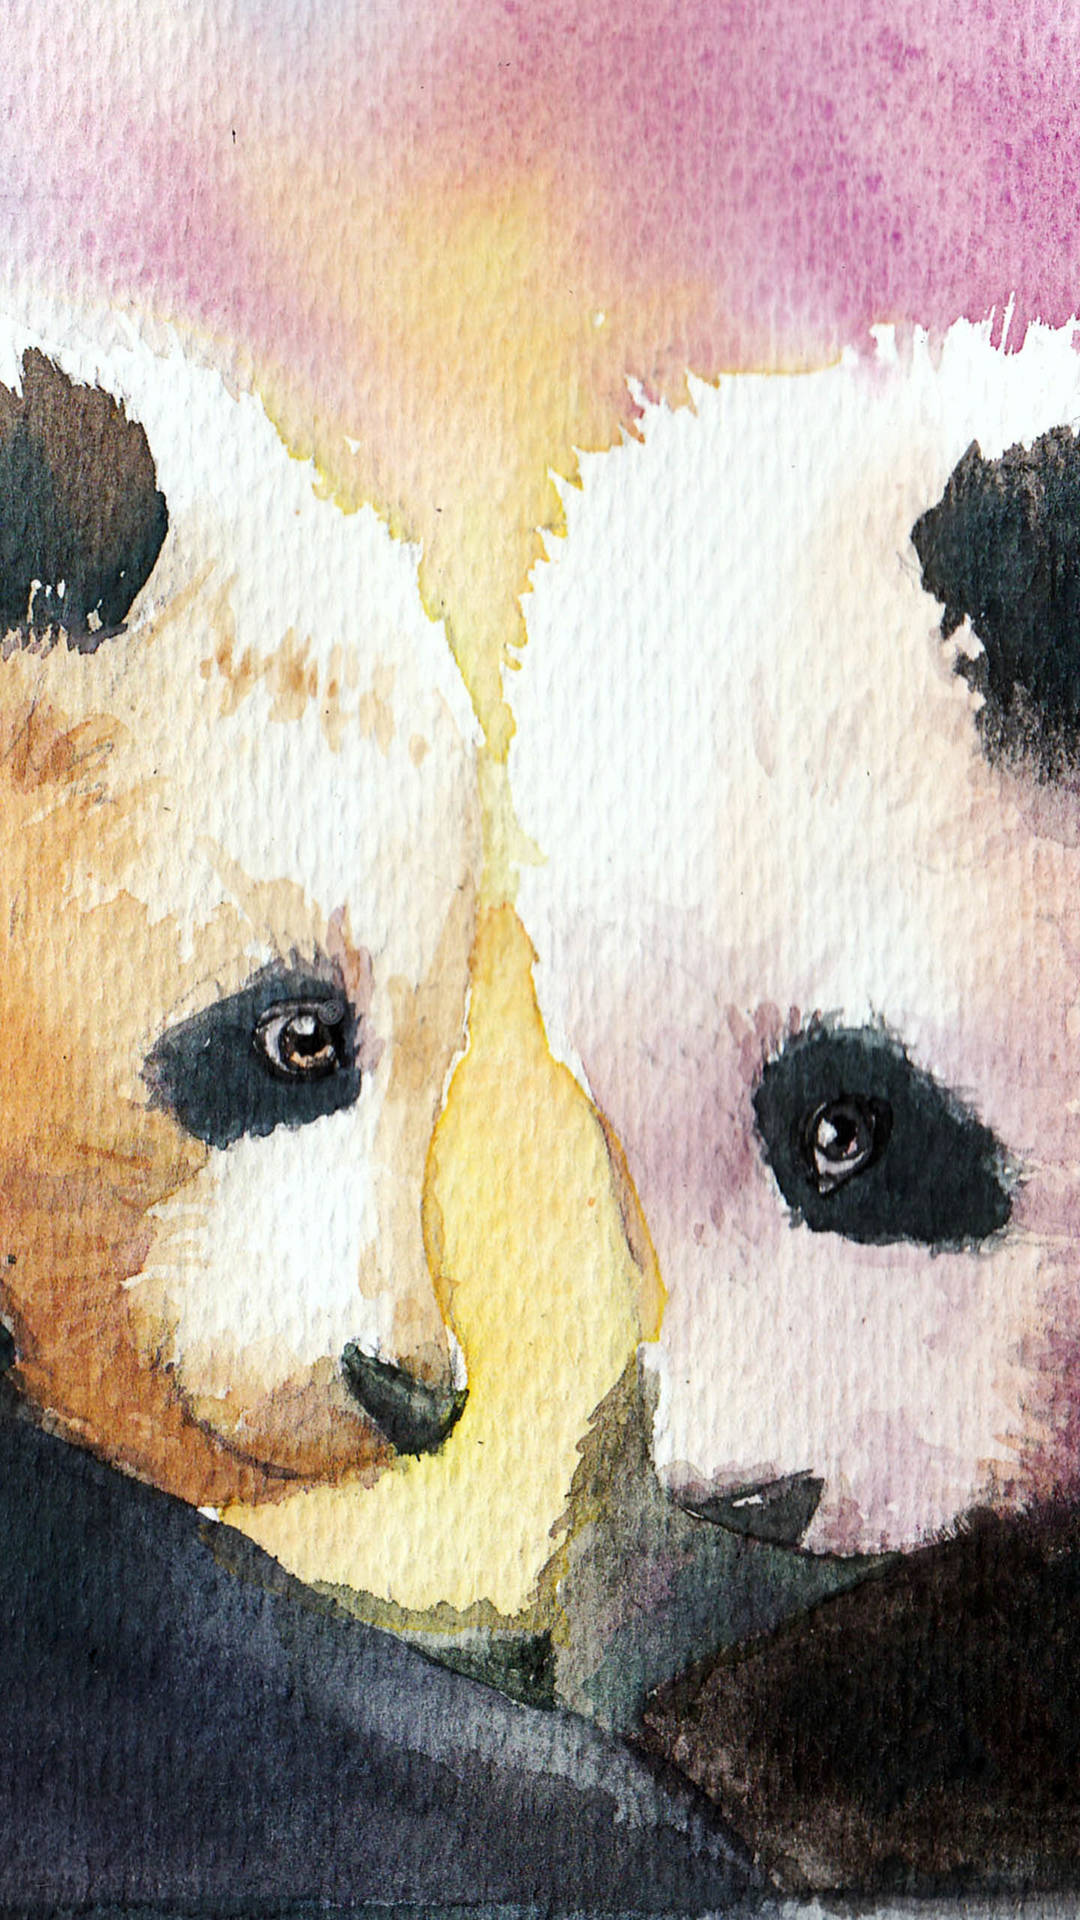 panda wallpaper,panda,bear,watercolor paint,art,carnivore